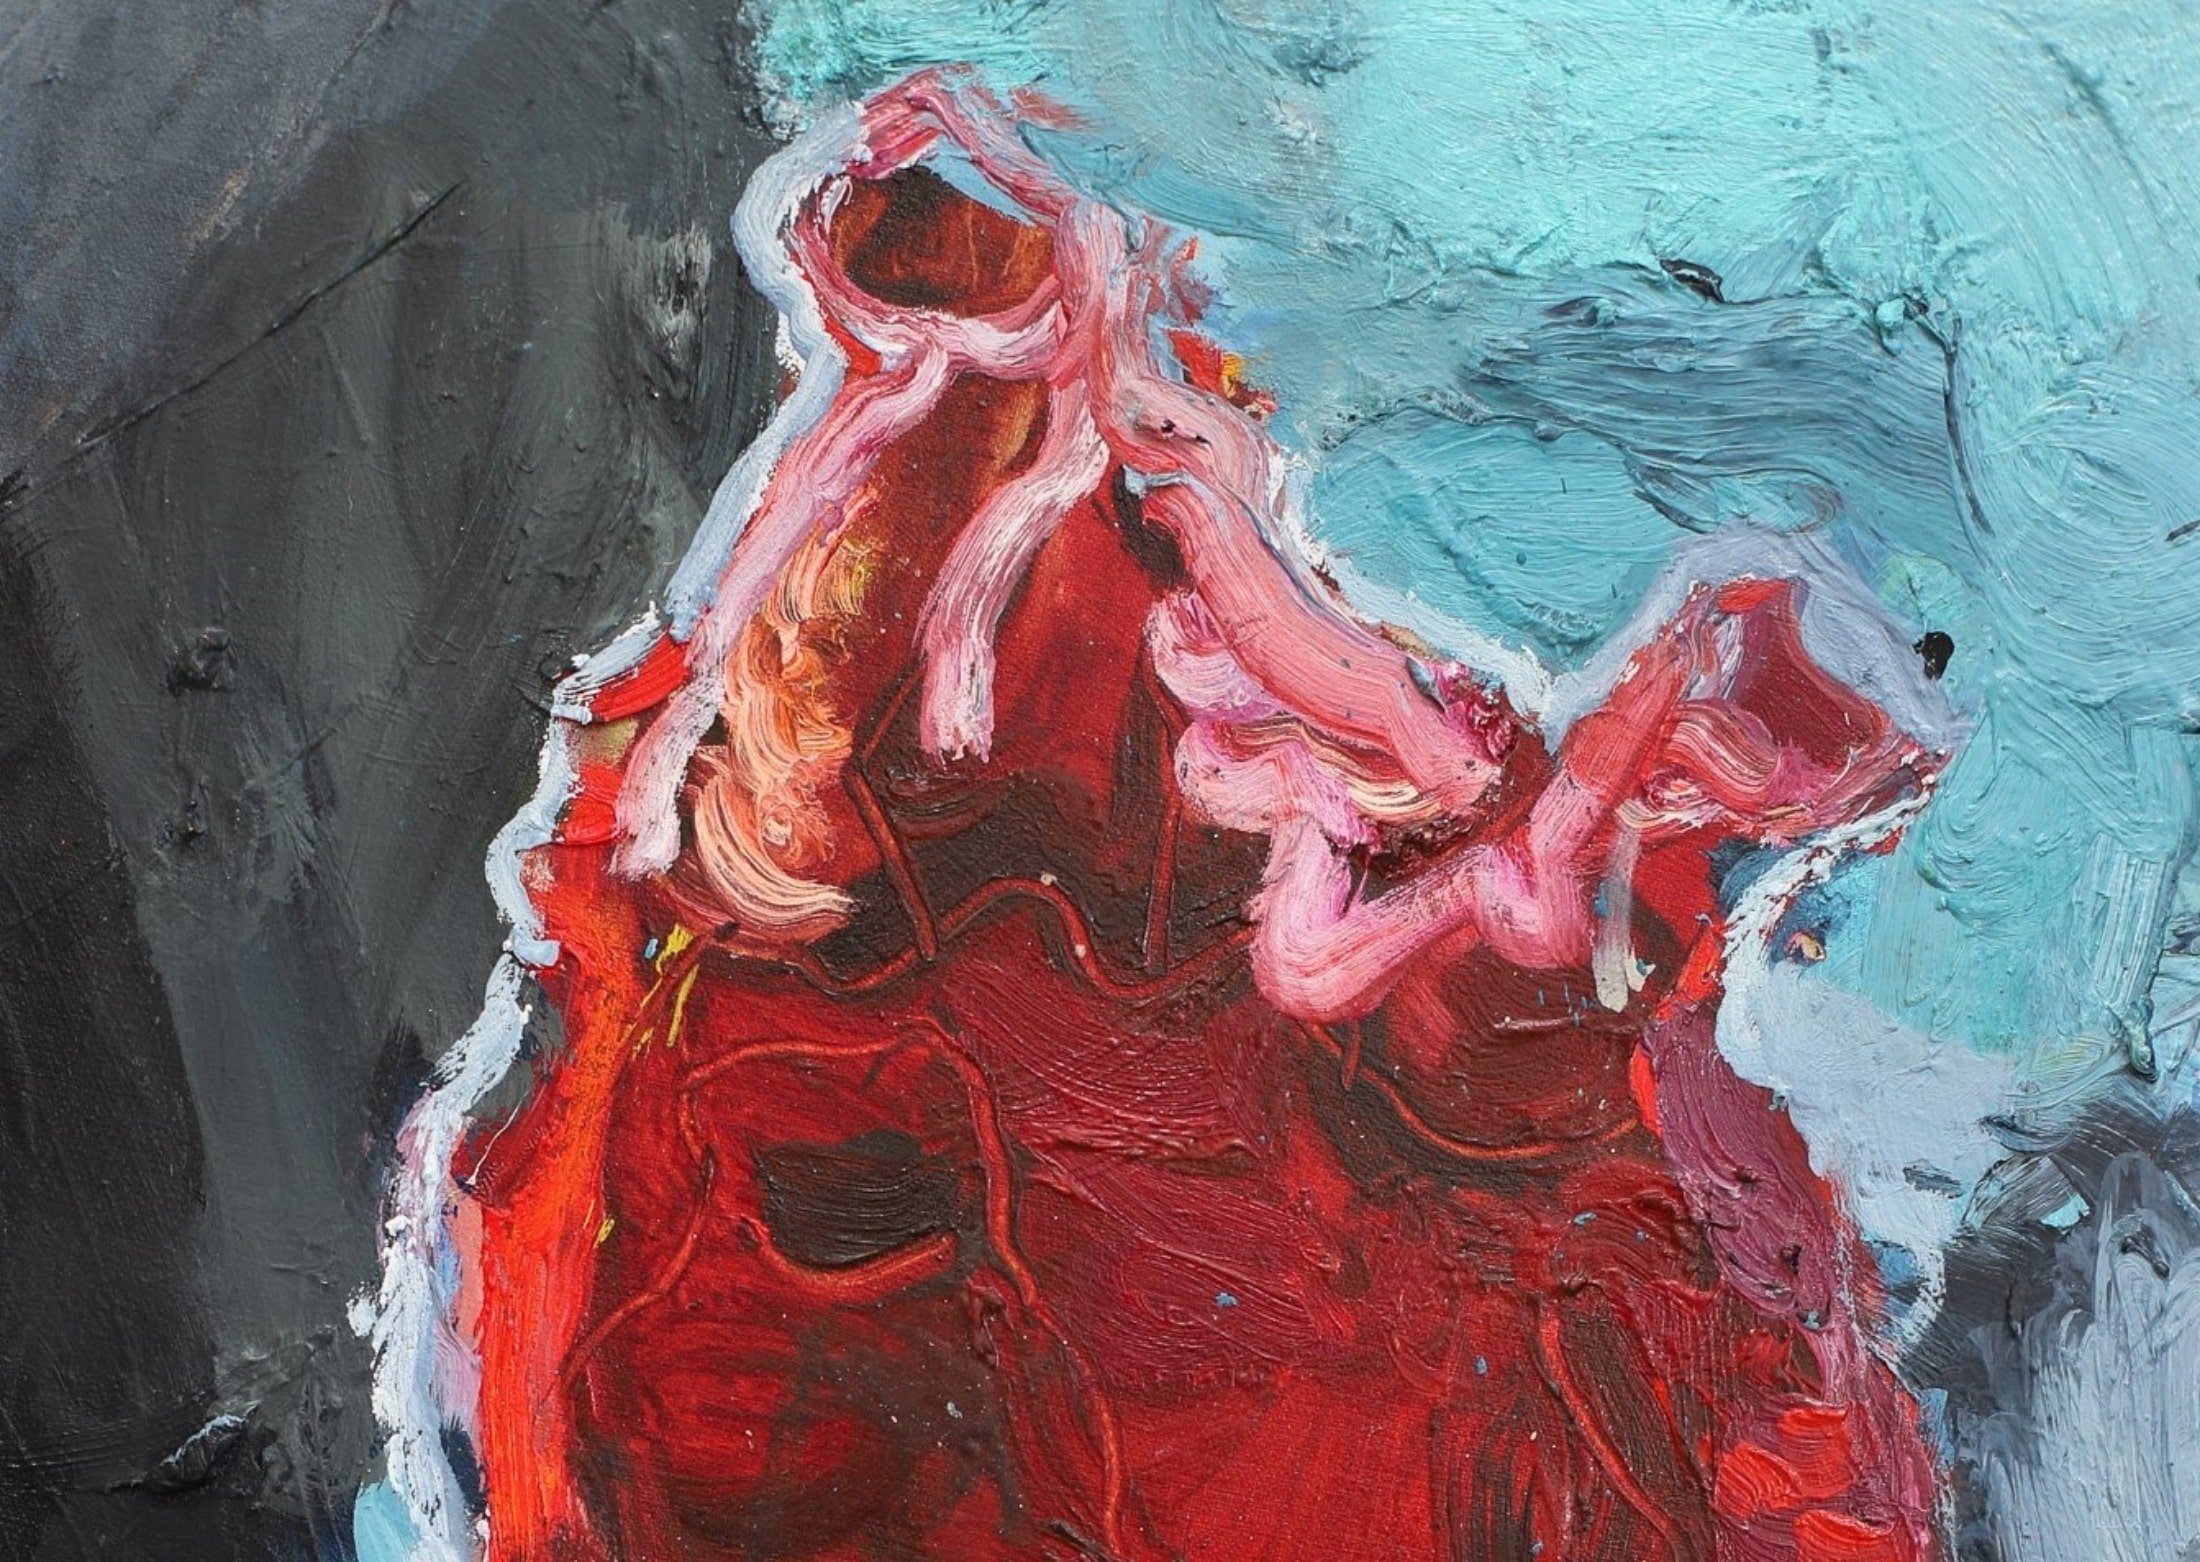 heartbeat-2-heart-paintings-min.jpg